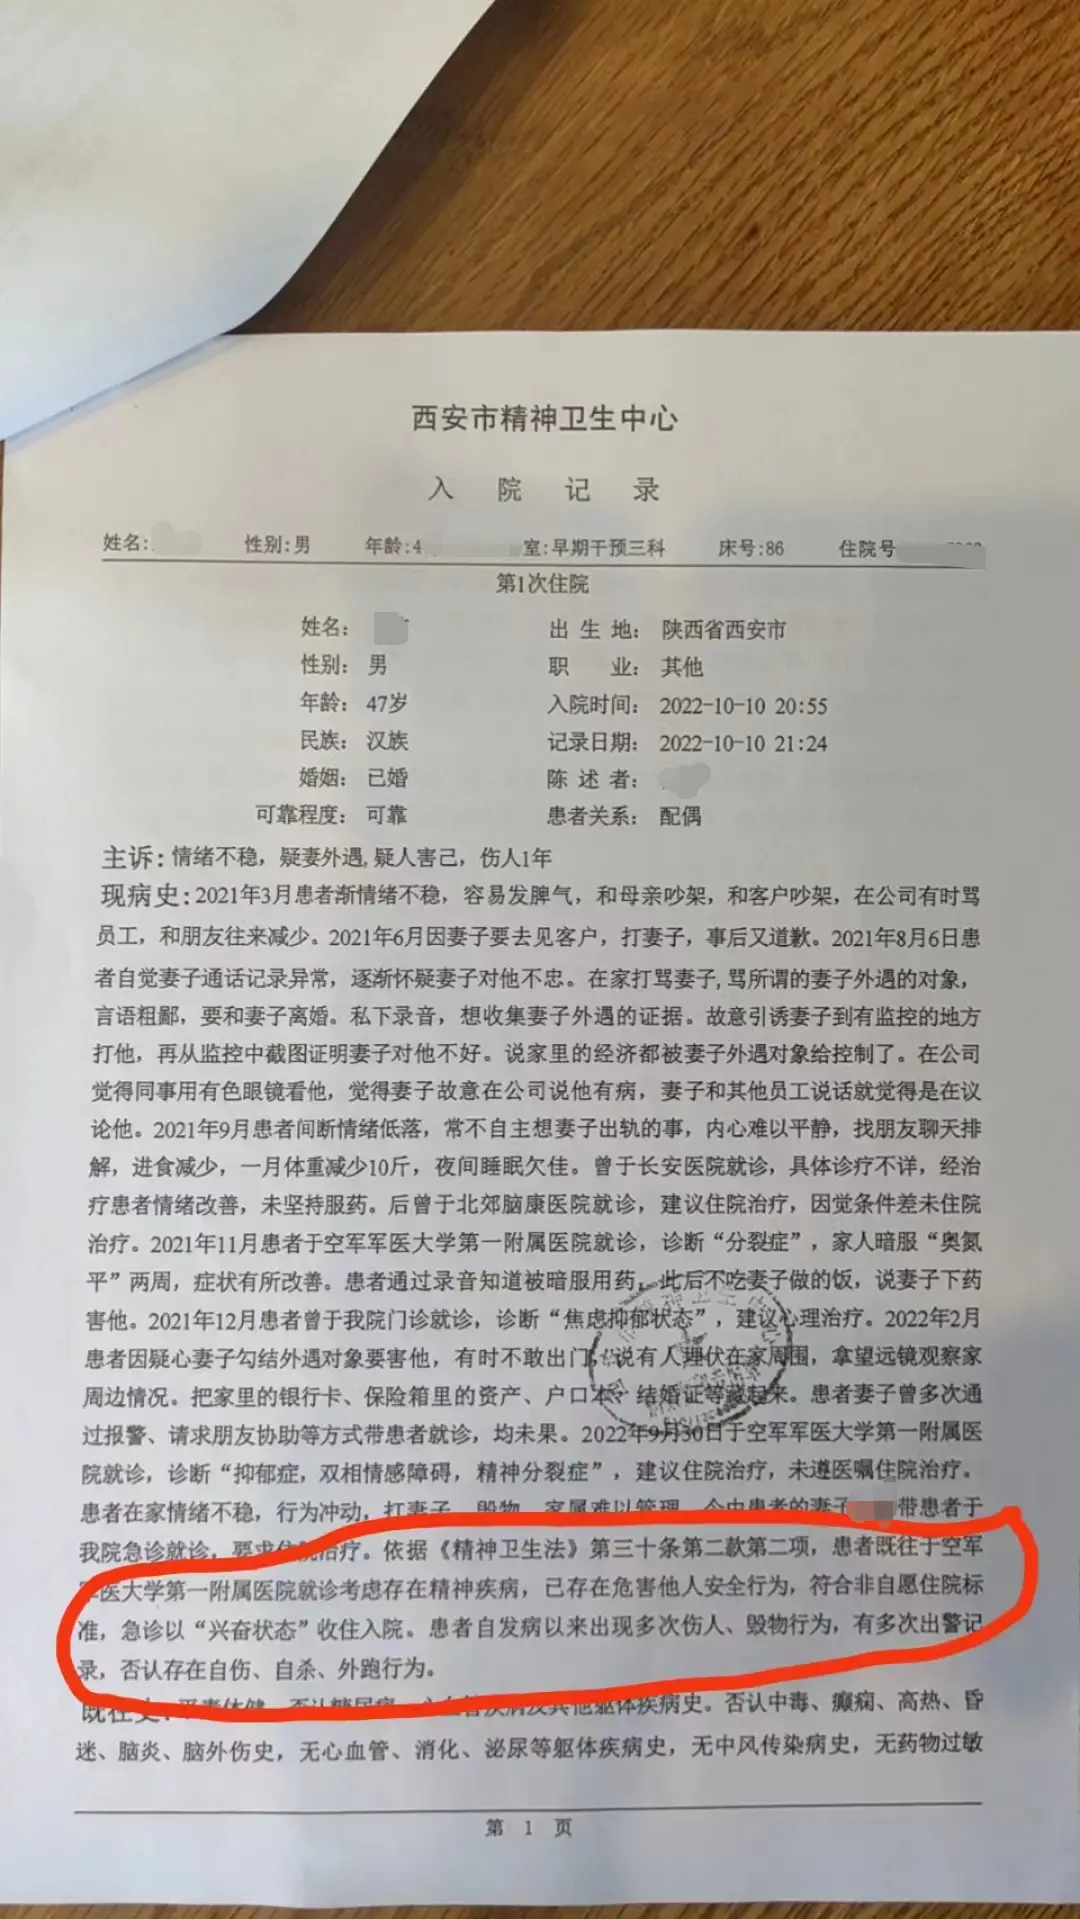 刘华被送精神病院的入院诊断记录 图/受访者提供